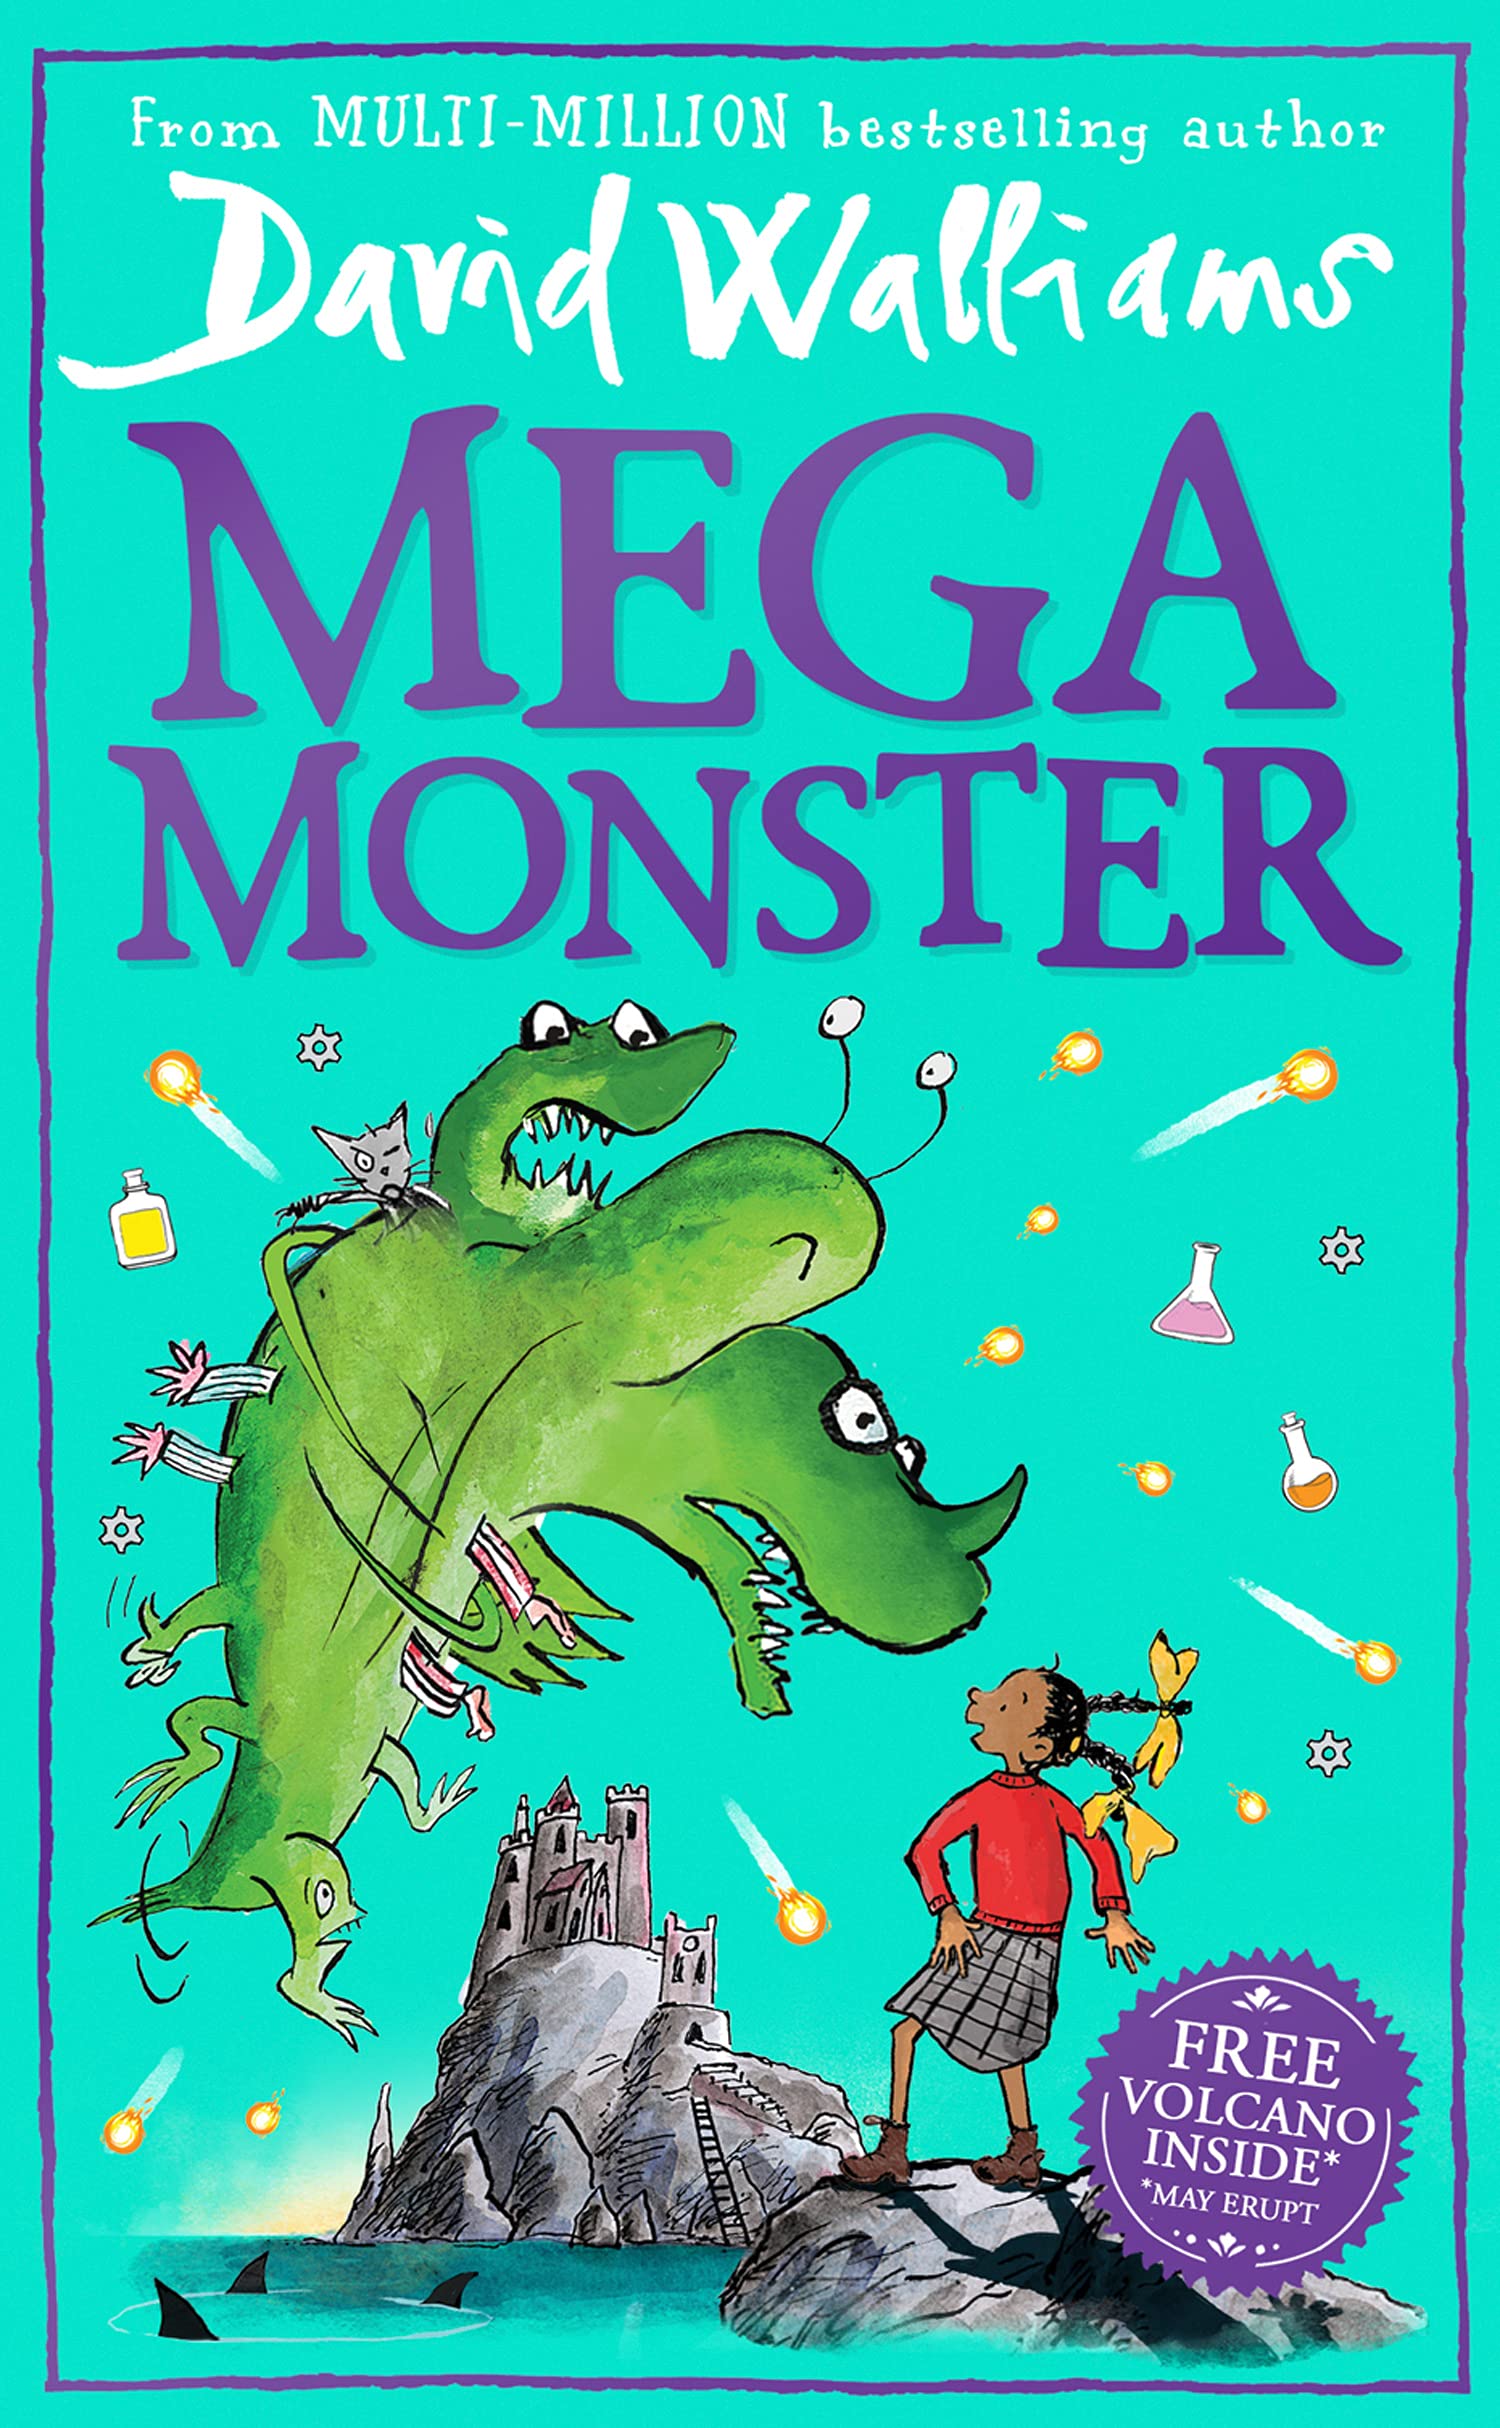 Megamonster (Paperback)